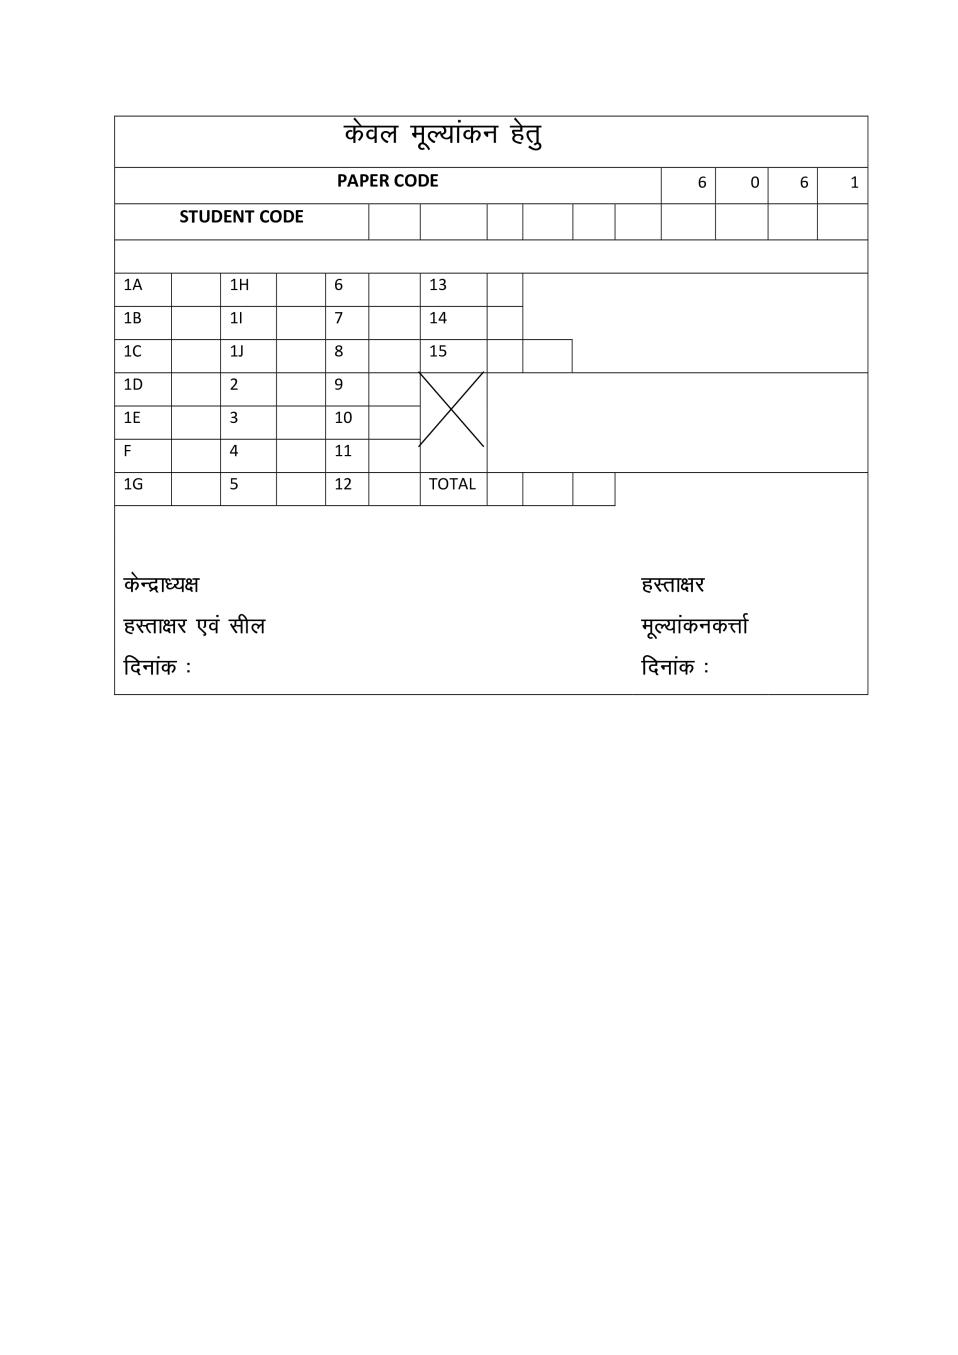 छत्तीसगढ़ बोर्ड कक्षा 6 उर्दू प्रश्न पत्र 2019 - Page 1